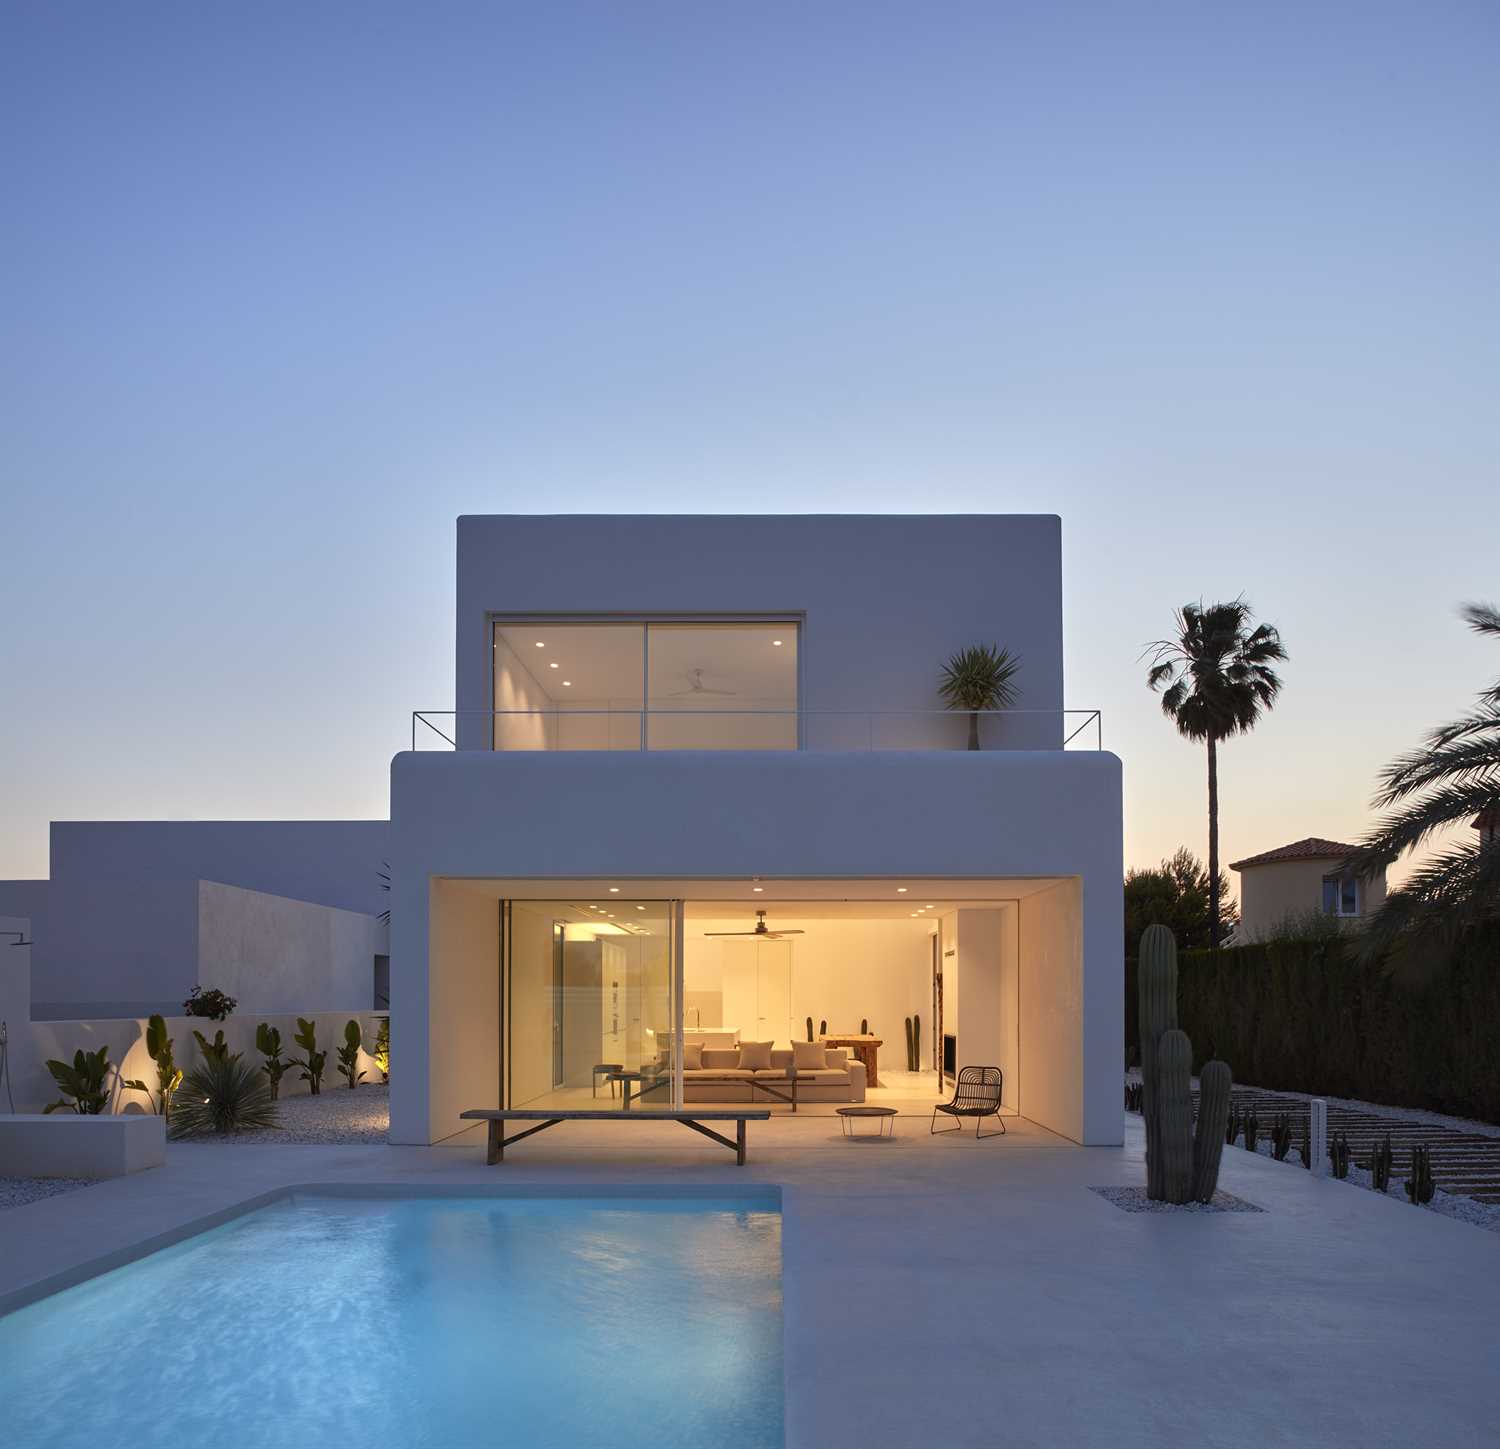 Béton ciré blanc sur la façade et la piscine d'une maison moderne.